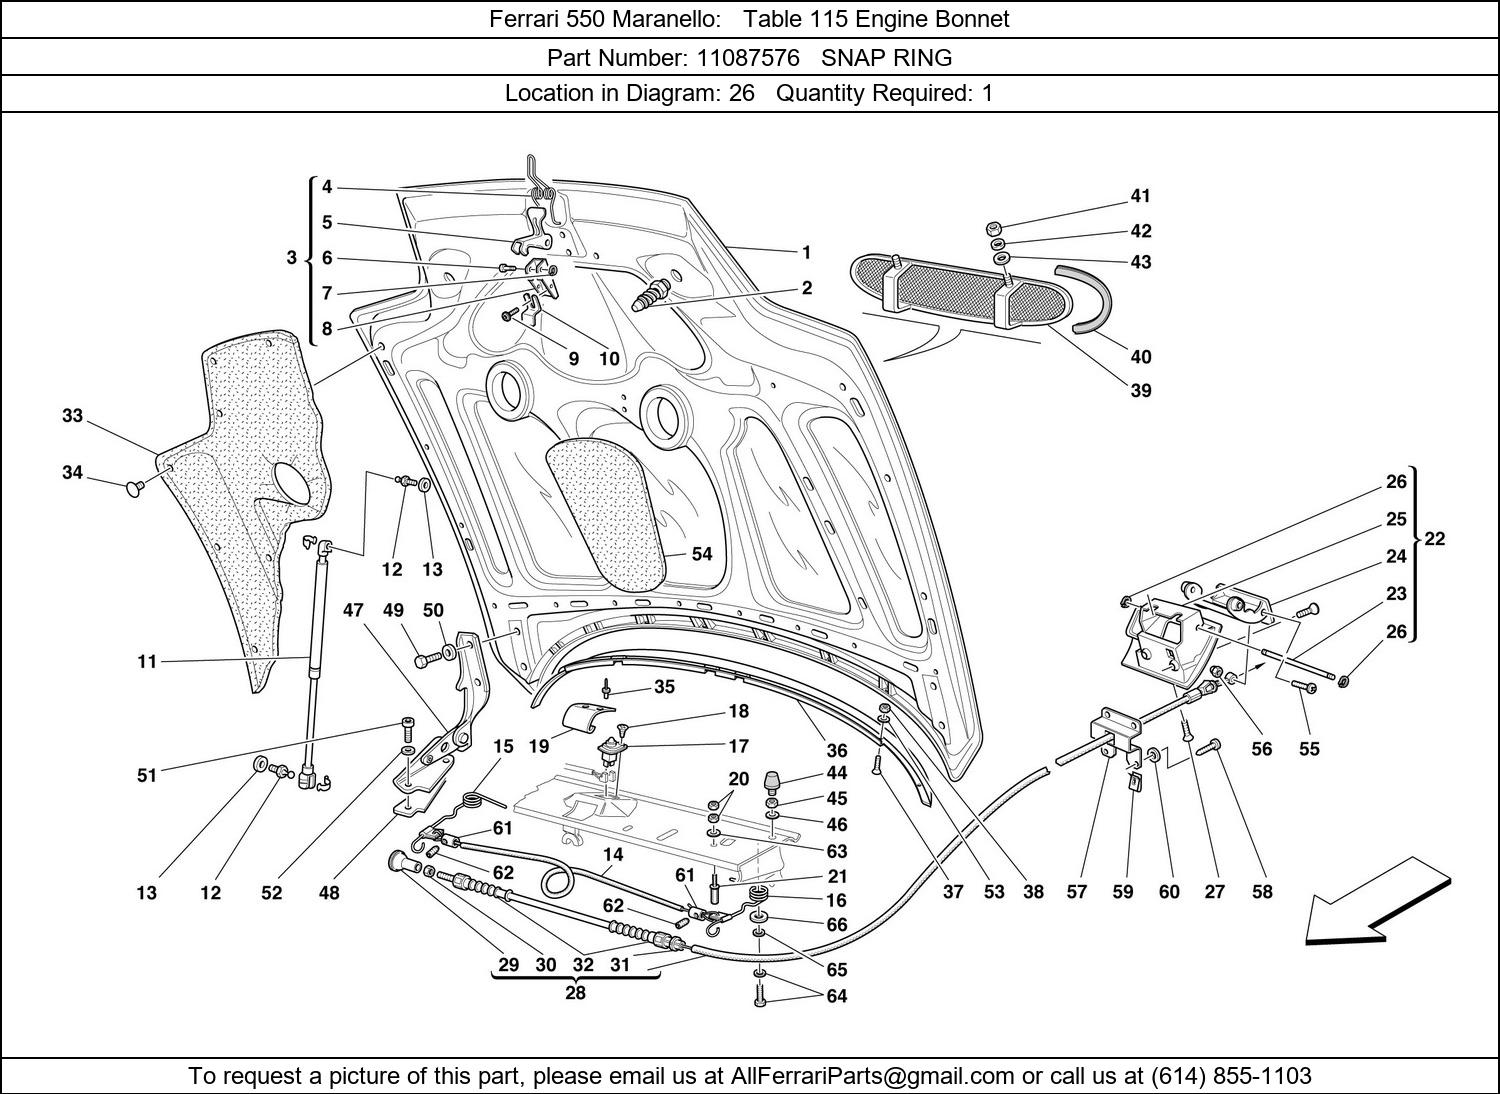 Ferrari Part 11087576